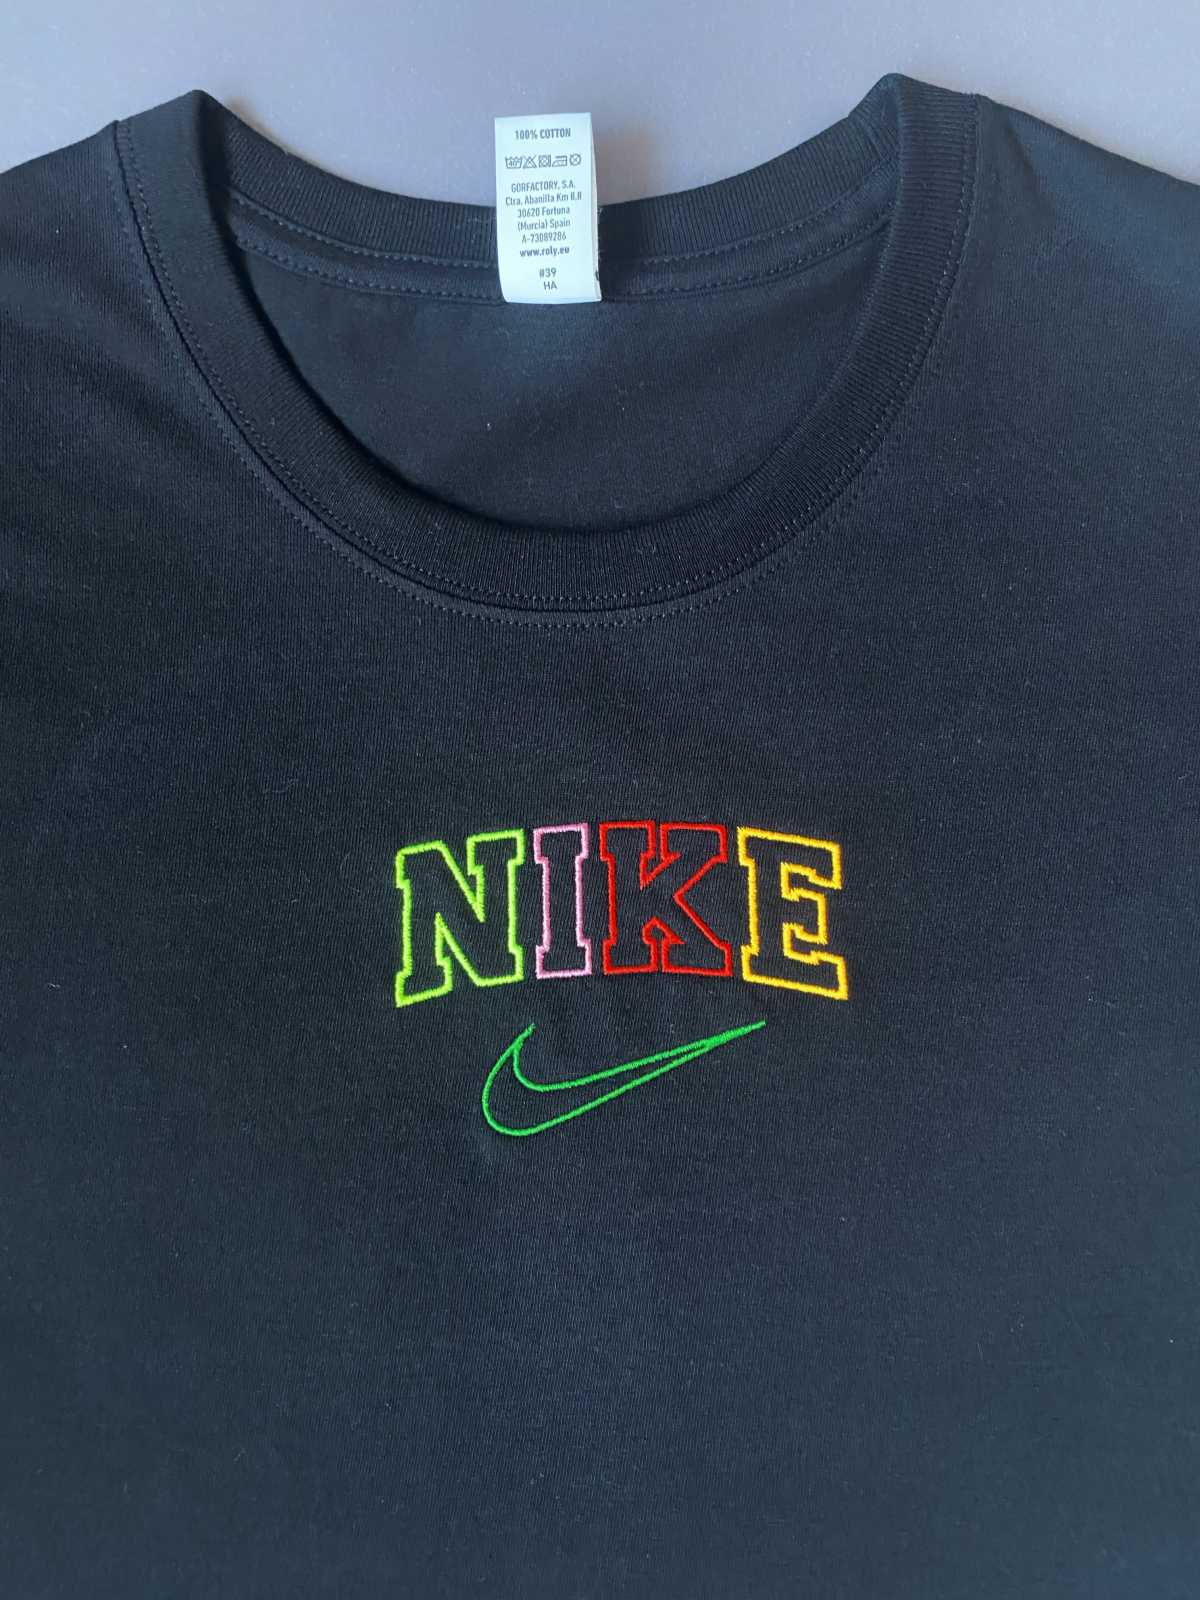 Nike.jpeg